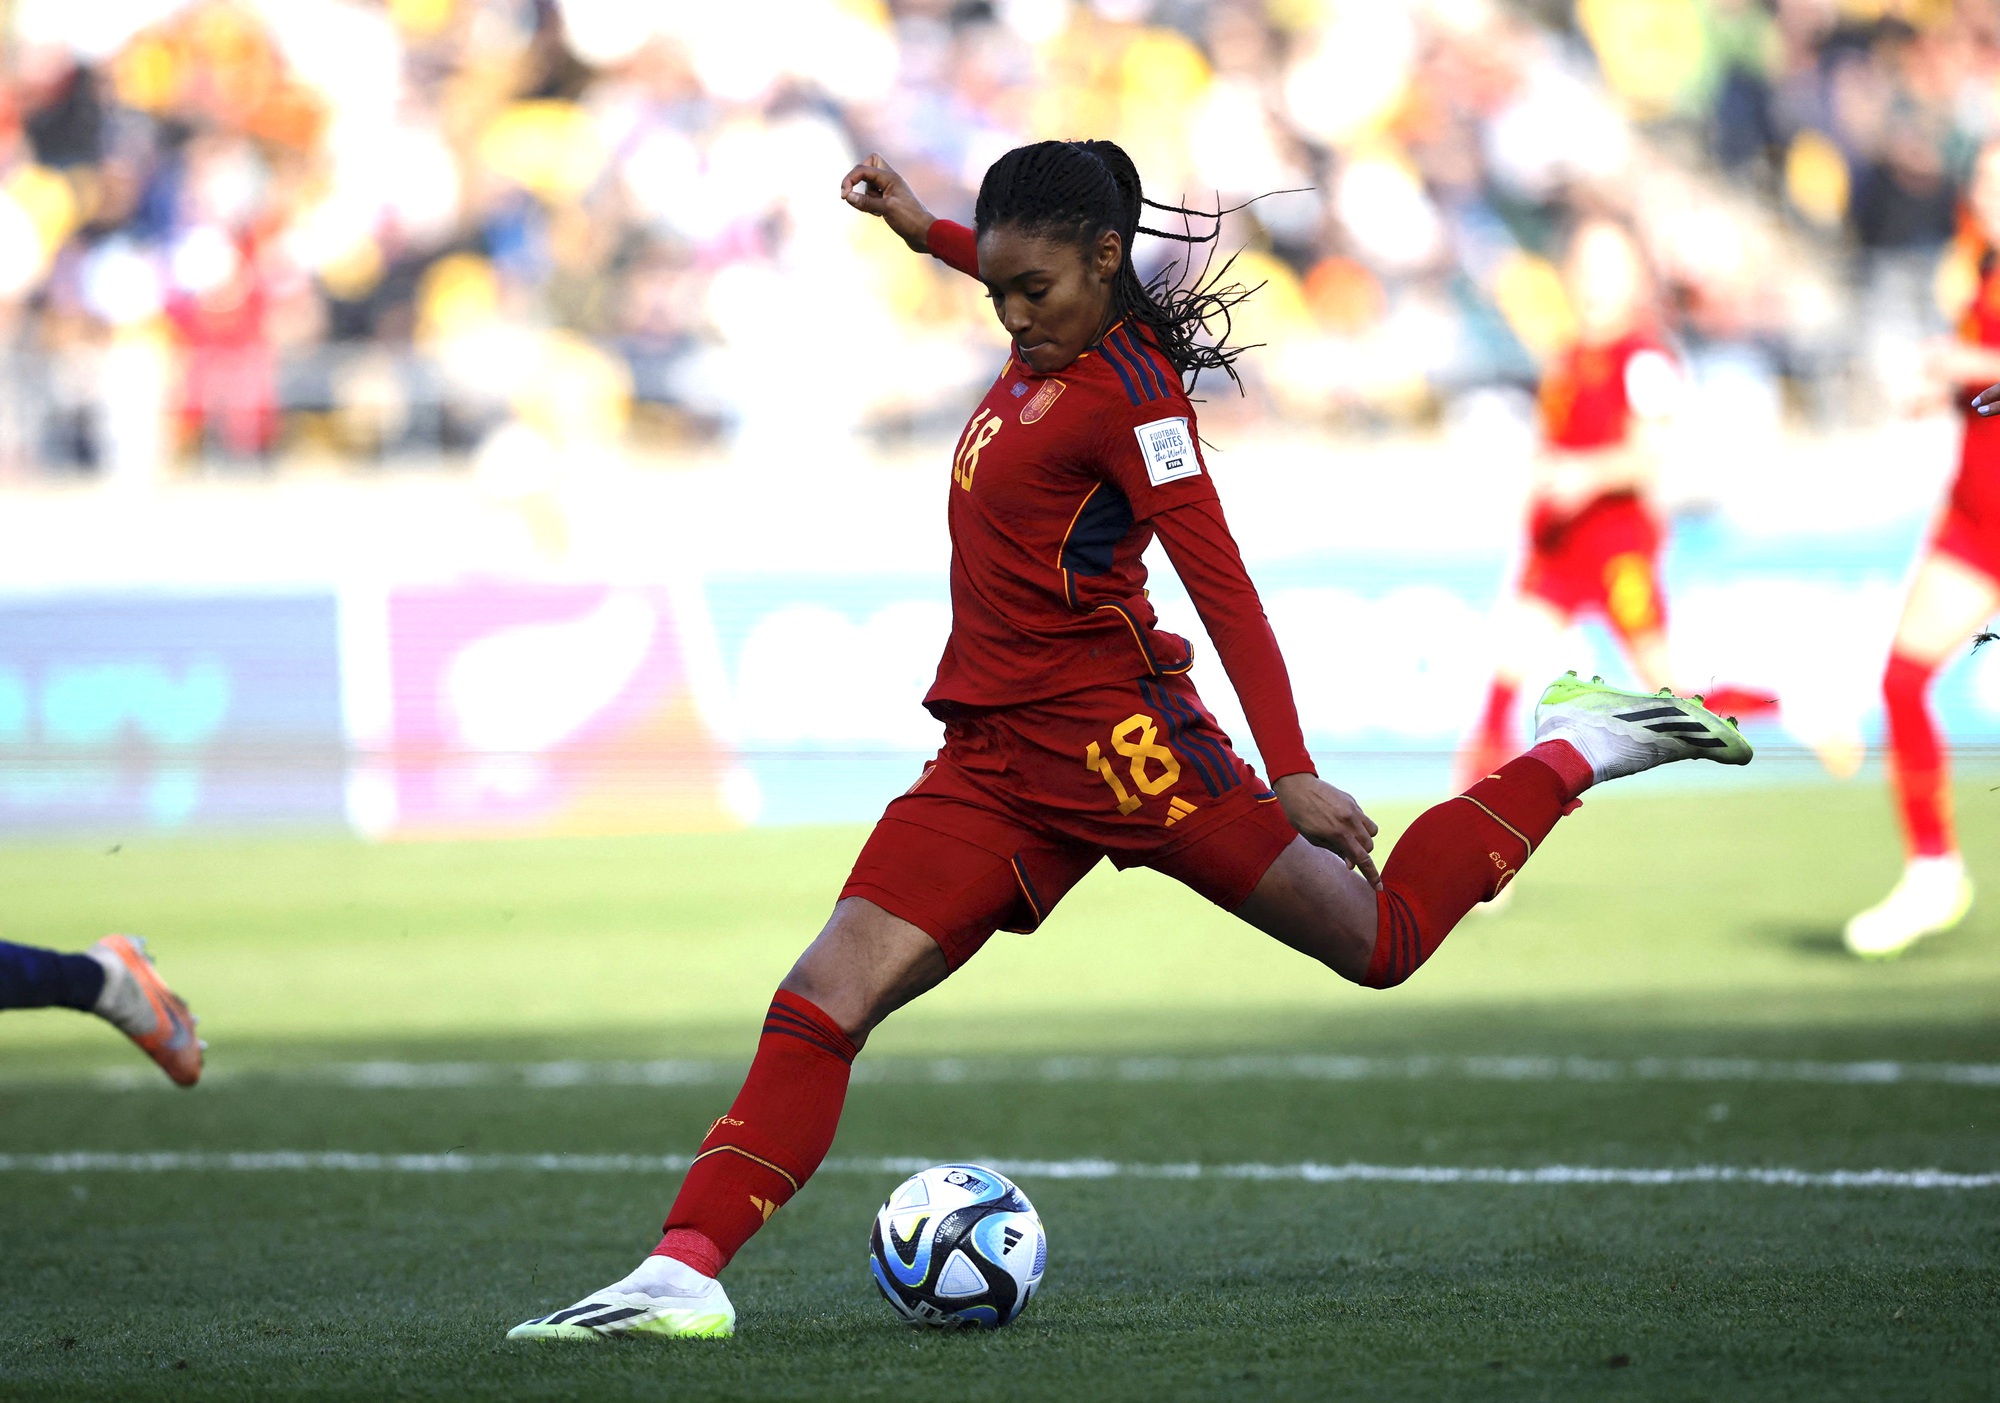 Tài năng điền kinh ghi bàn thắng vàng cho Tây Ban Nha tại World Cup nữ - Ảnh 4.